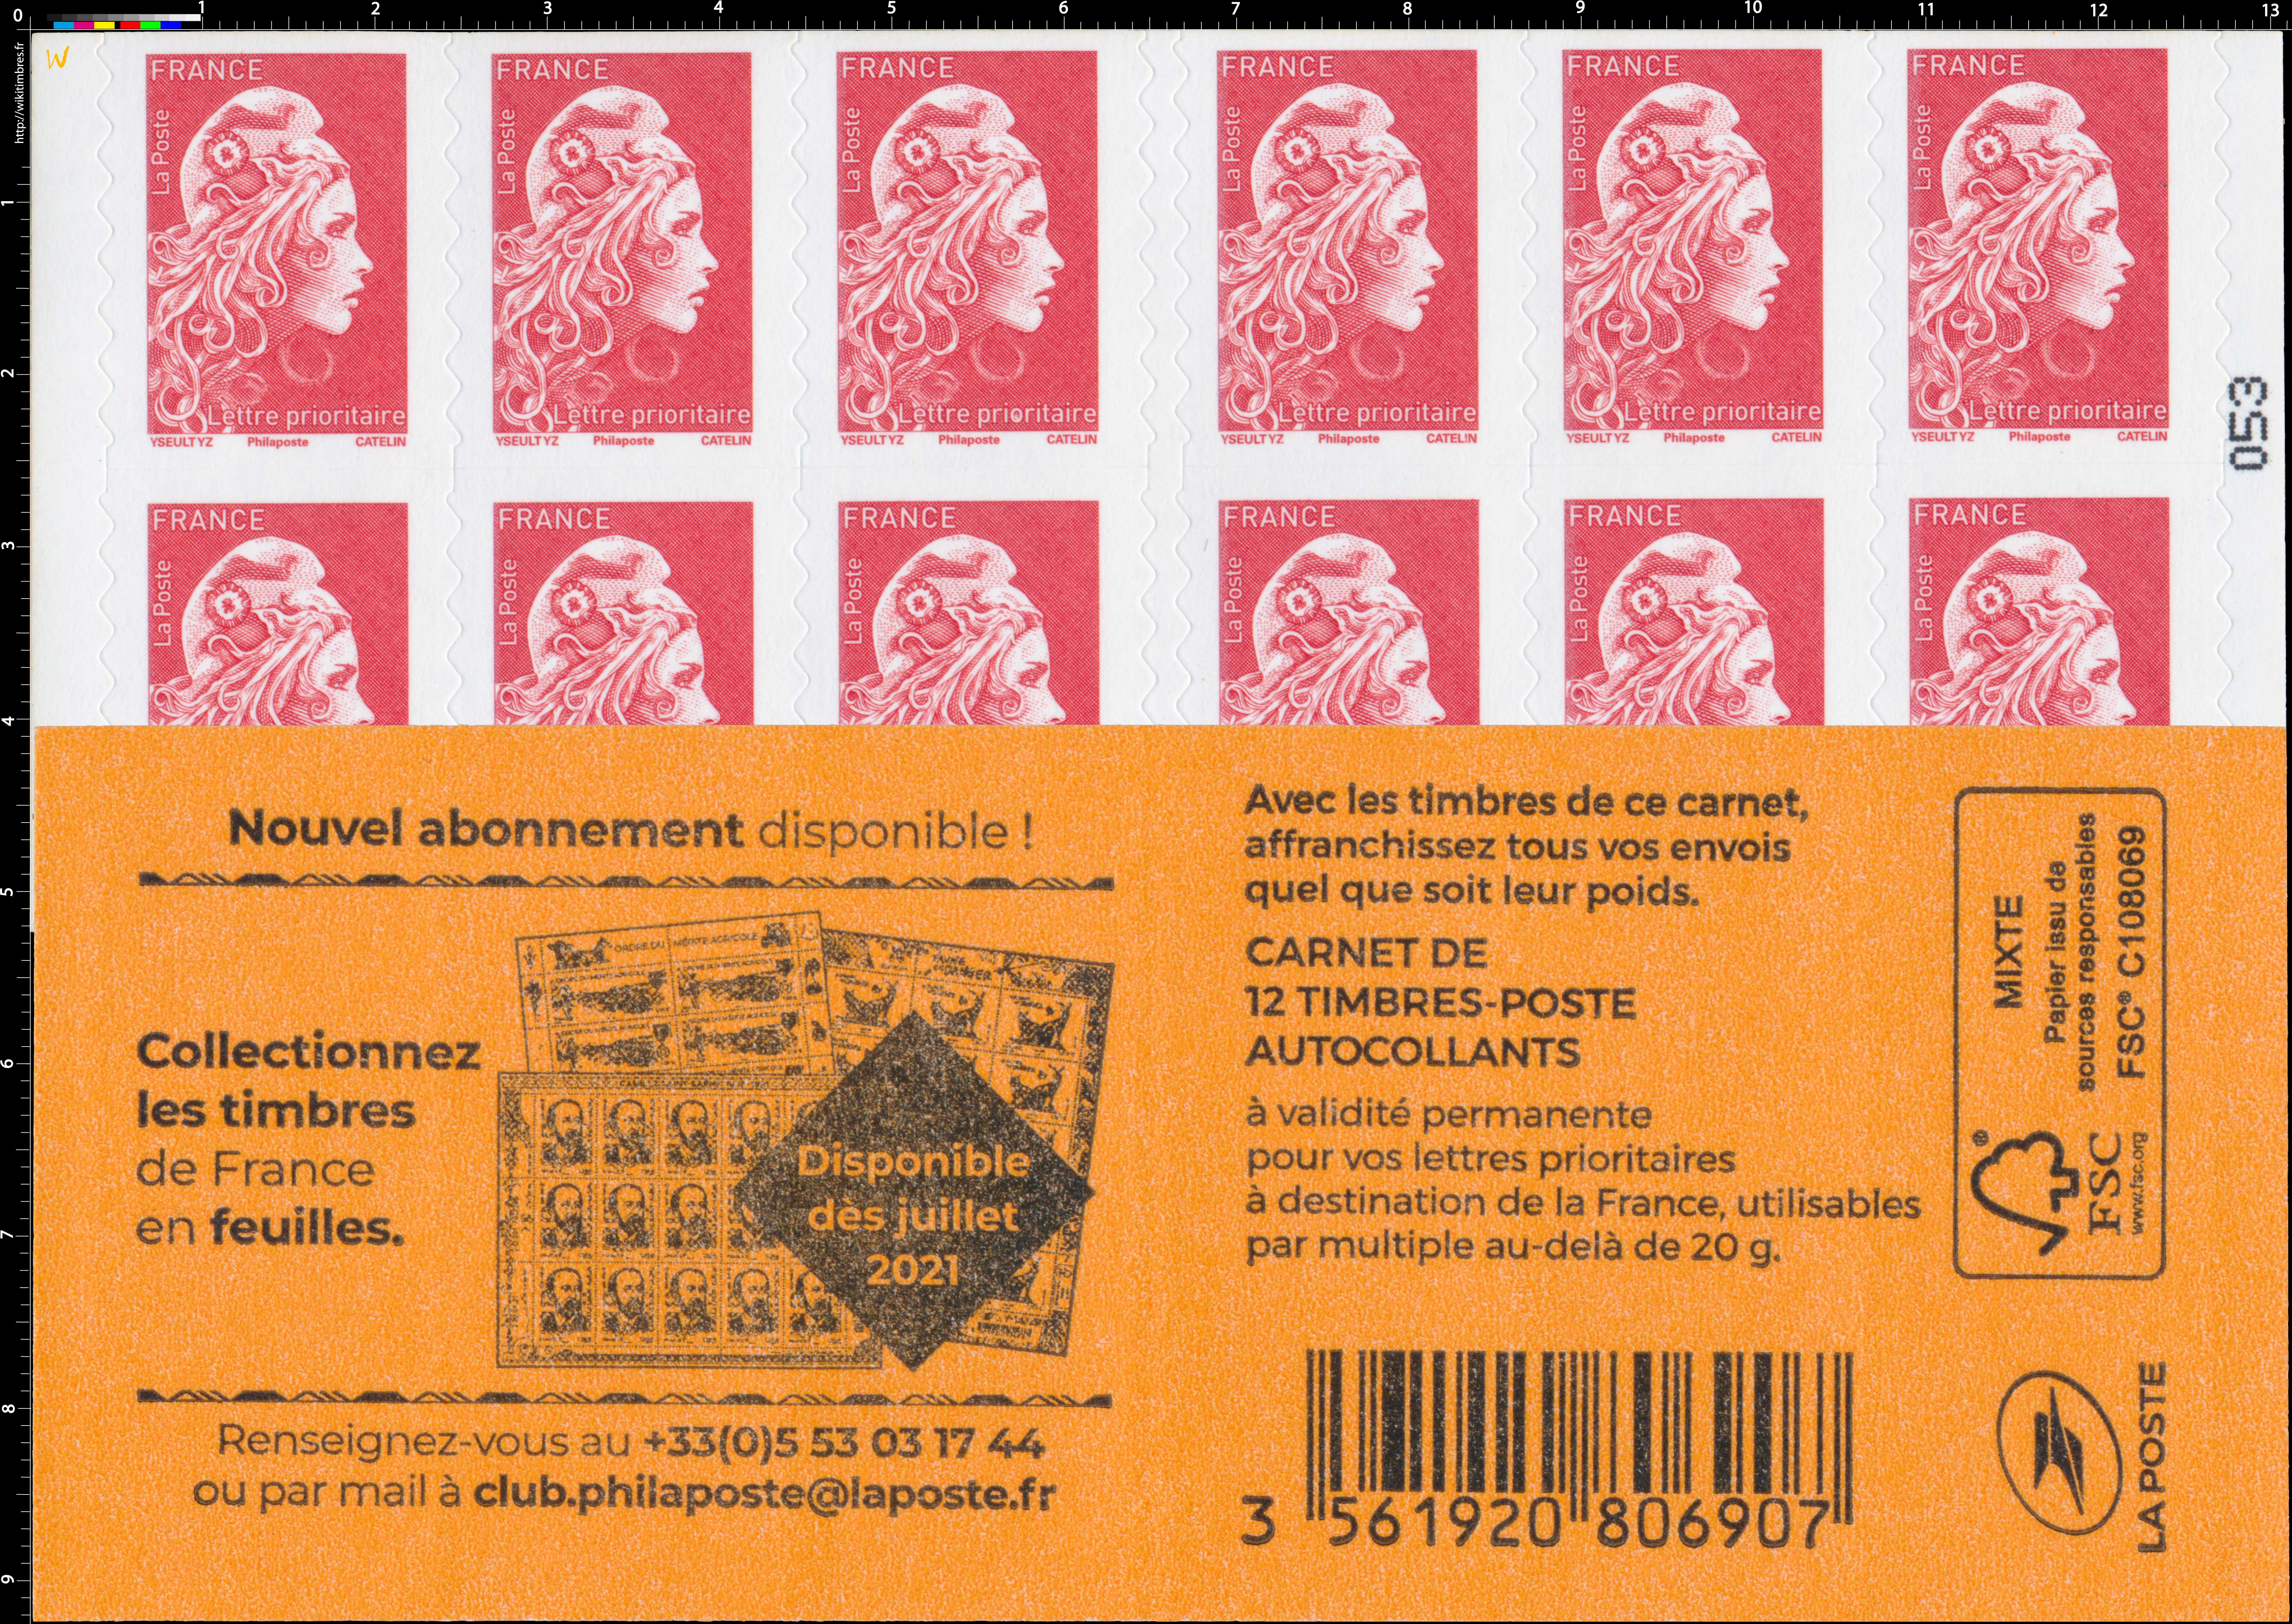 2021 Collectionnez les timbres de France en feuilles 